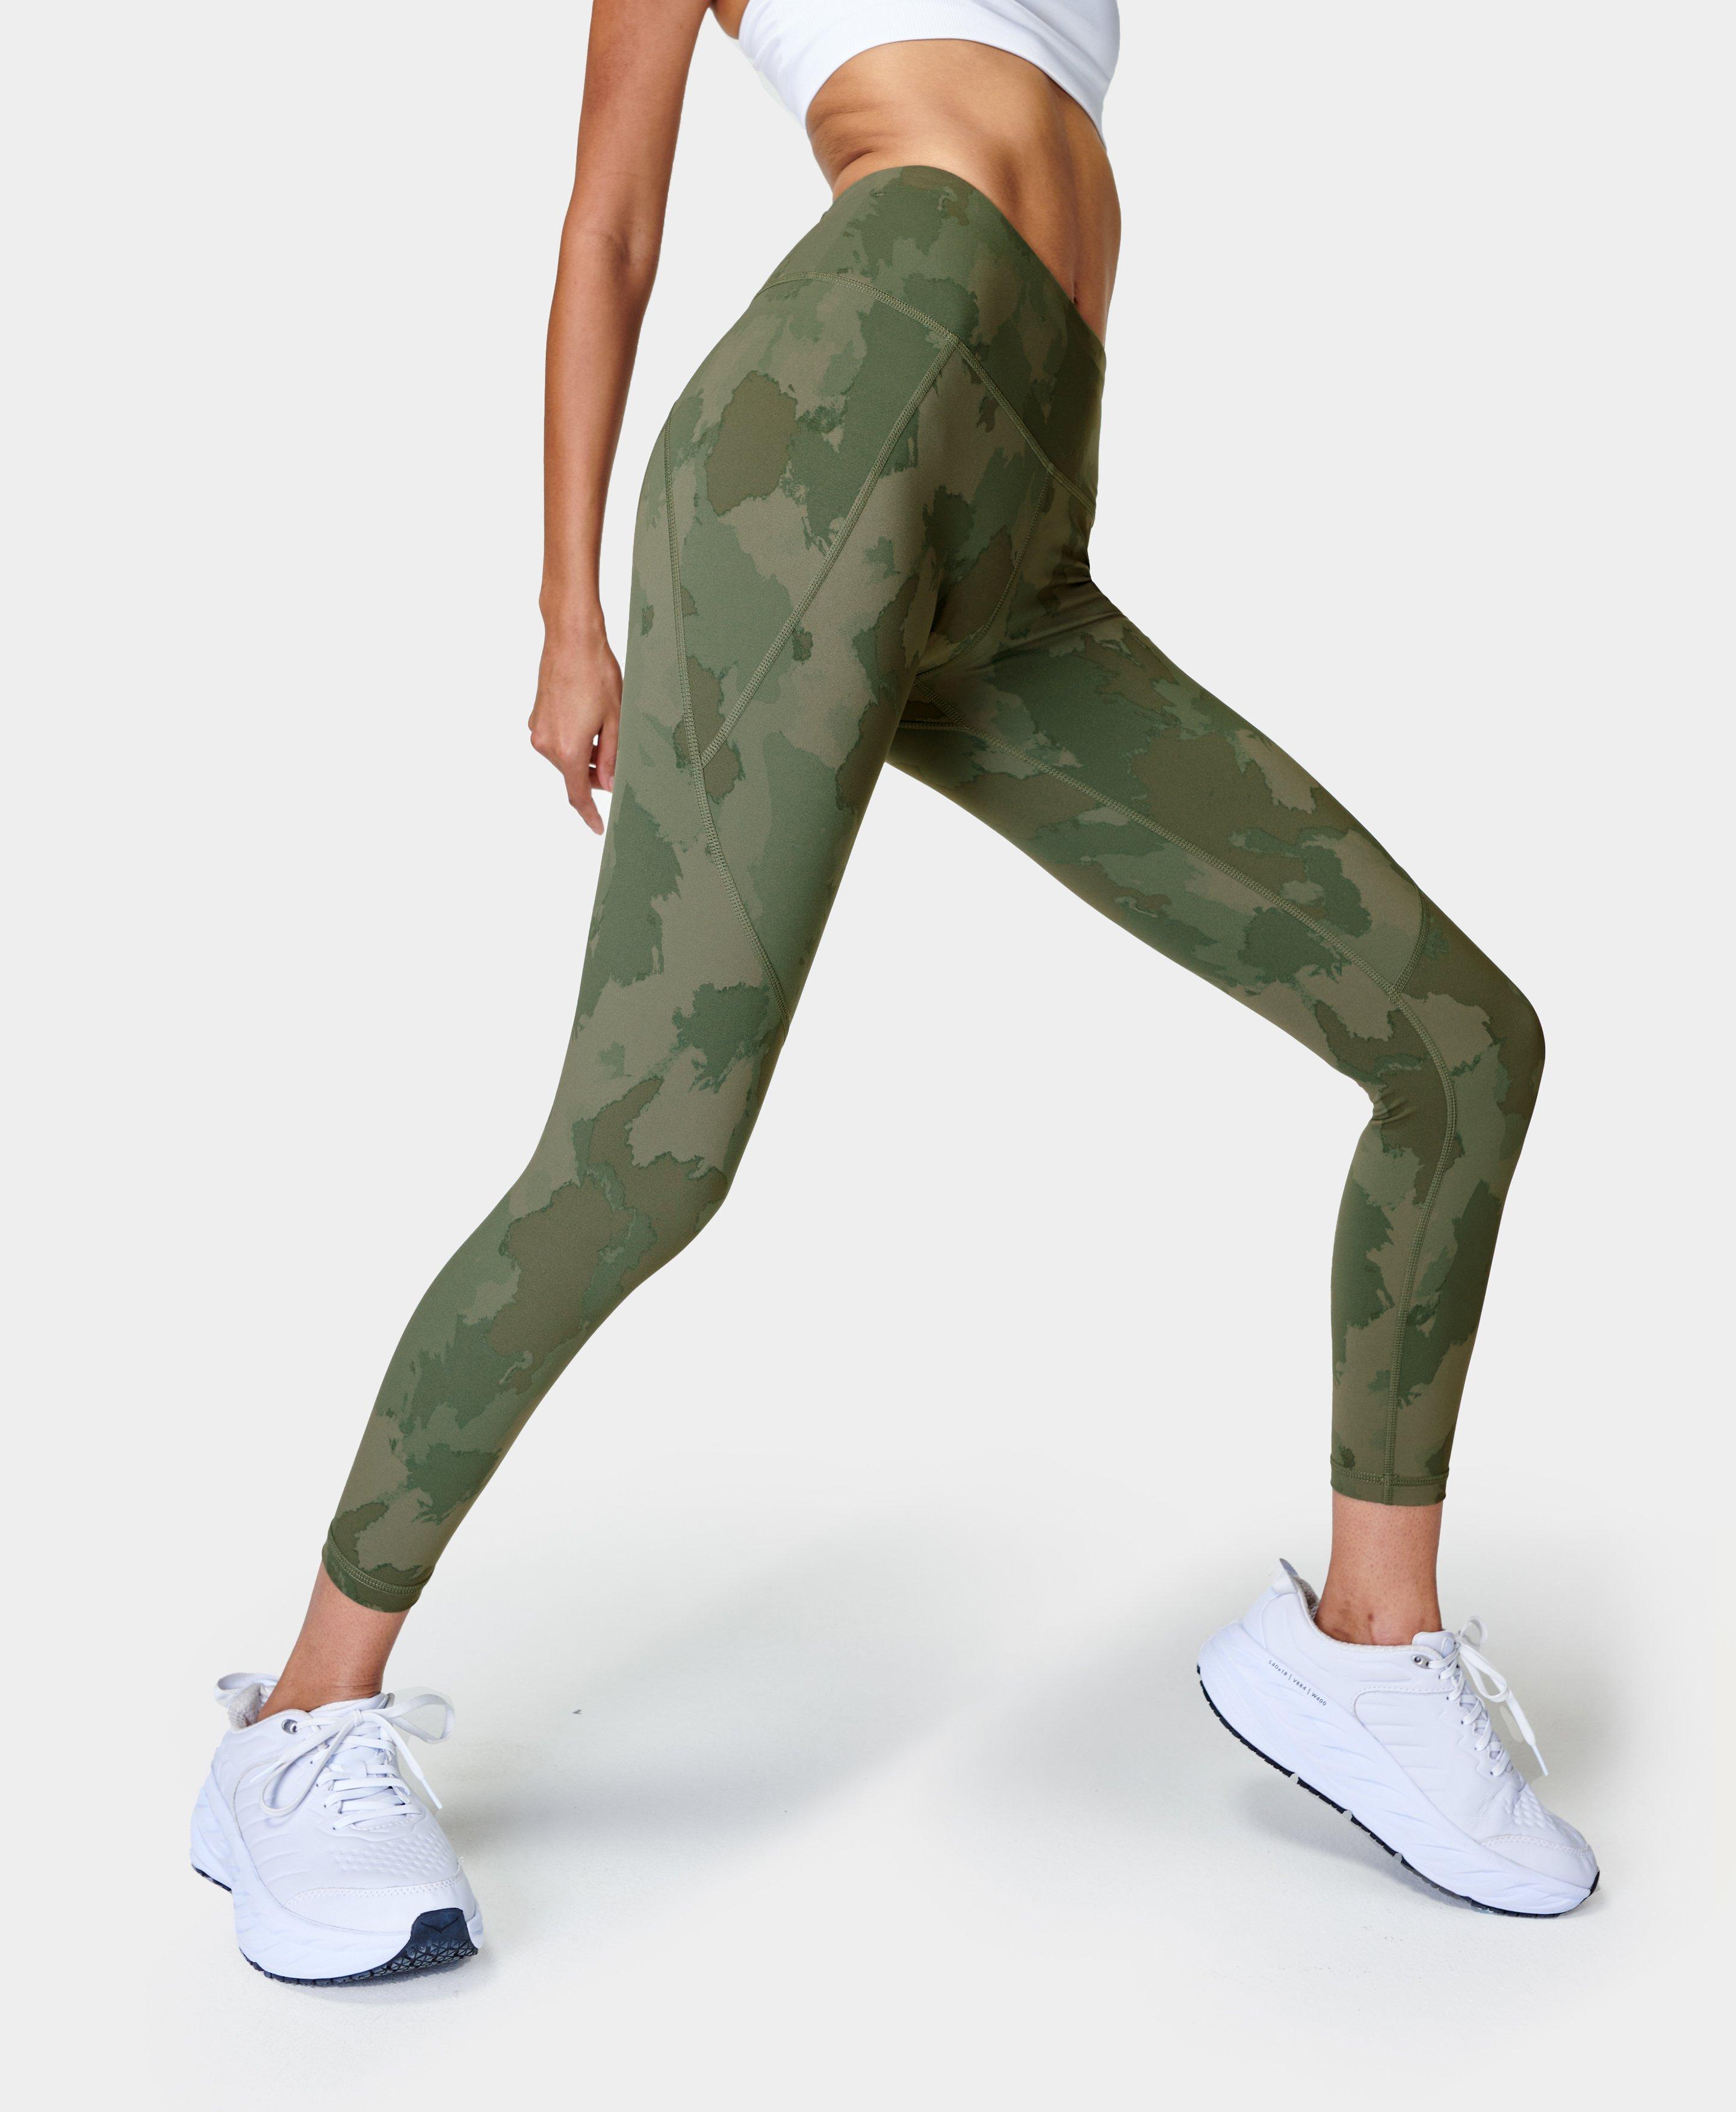 Sunzel, Pants & Jumpsuits, Sunzel Workout Leggings For Women Buttery Soft  Green Camo